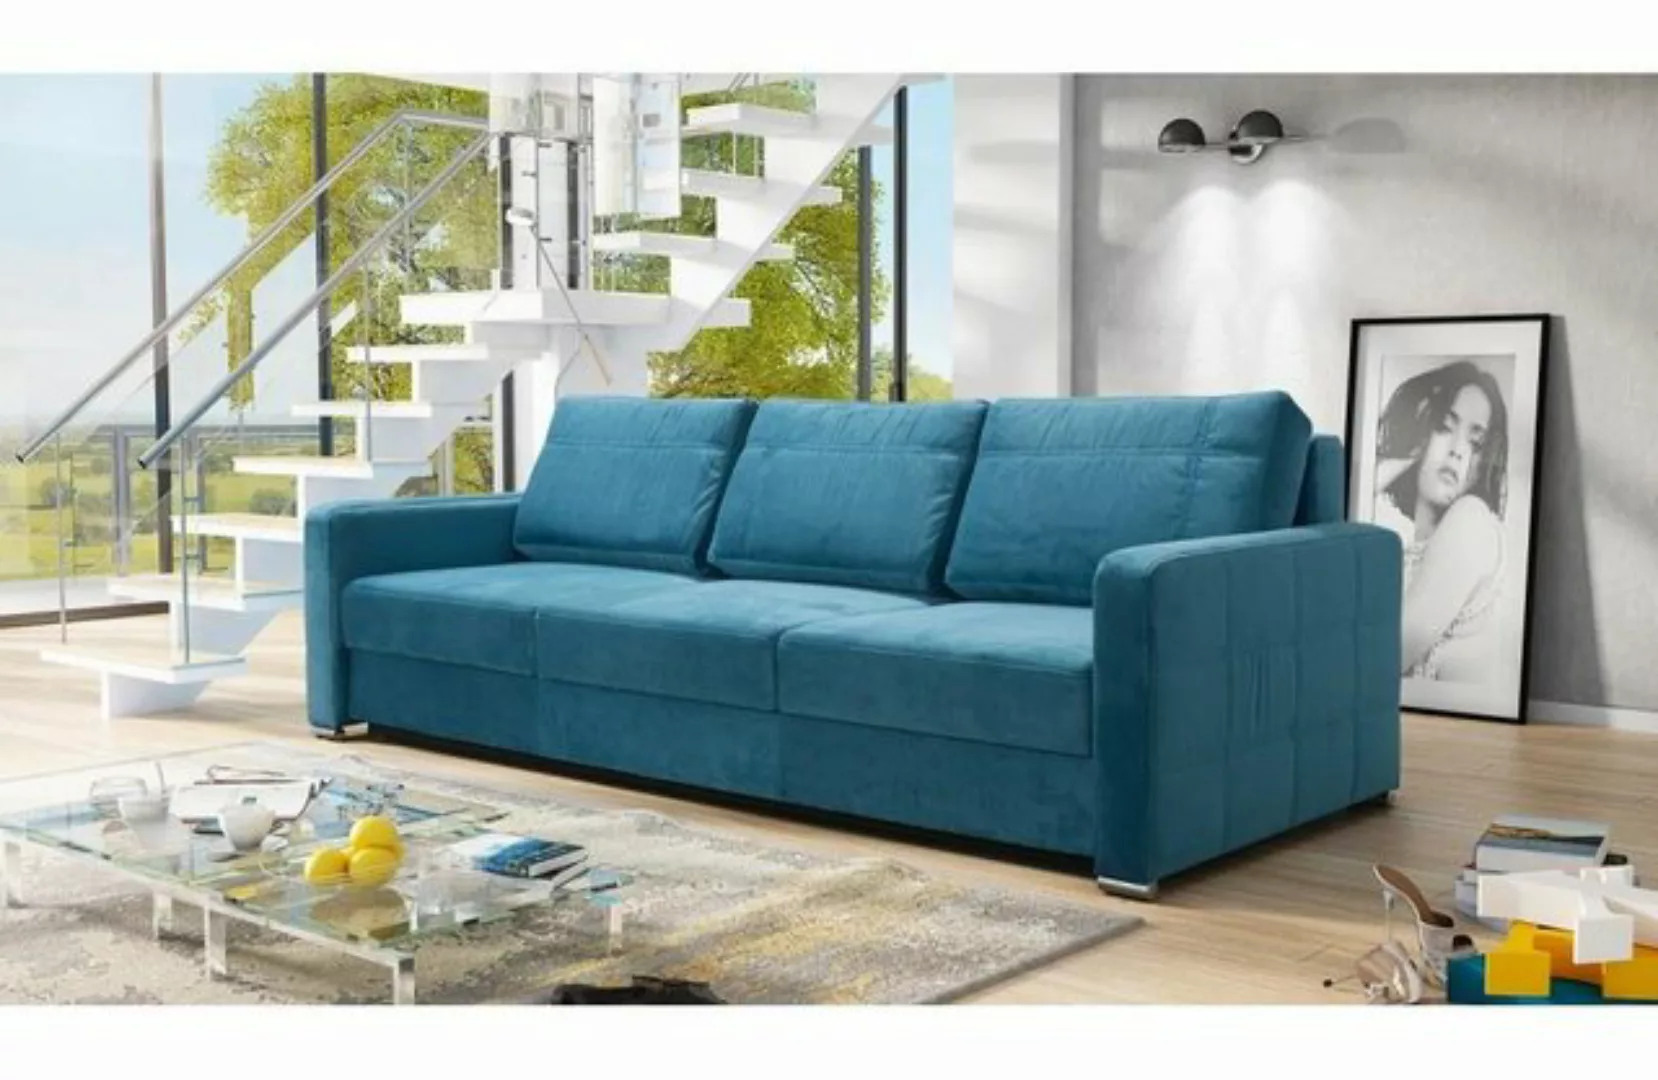 JVmoebel Sofa Schlafsofa Sofas Klapp Textil Couch Bett Sofa Kasten Couchen günstig online kaufen